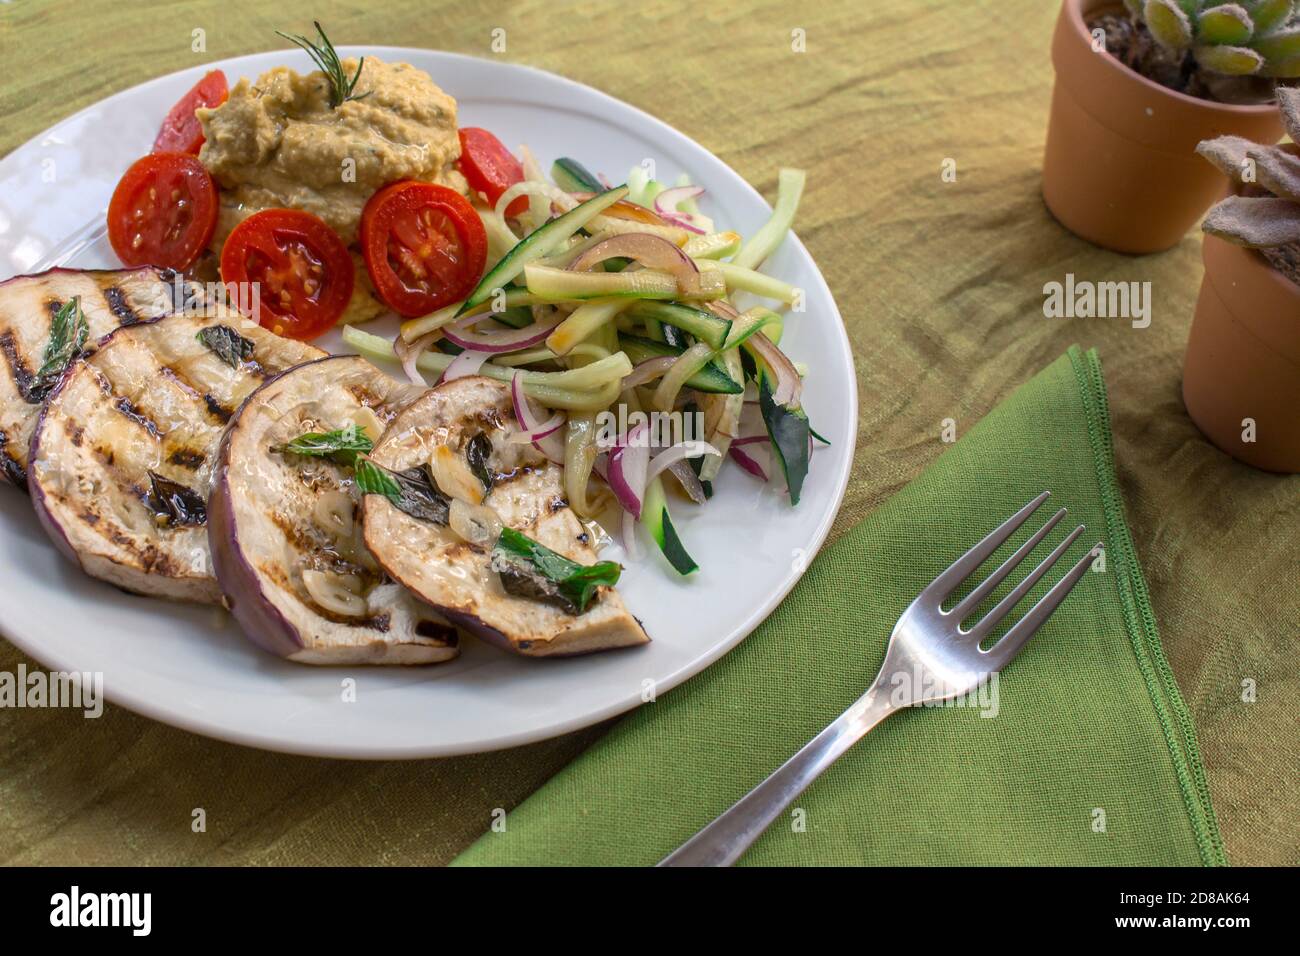 Ein veganes Gericht mit gegrillten tunesischen Auberginen, Kichererbsen-Hummus, Datterini-Tomaten und Julienne-Gurken und Zwiebeln Stockfoto